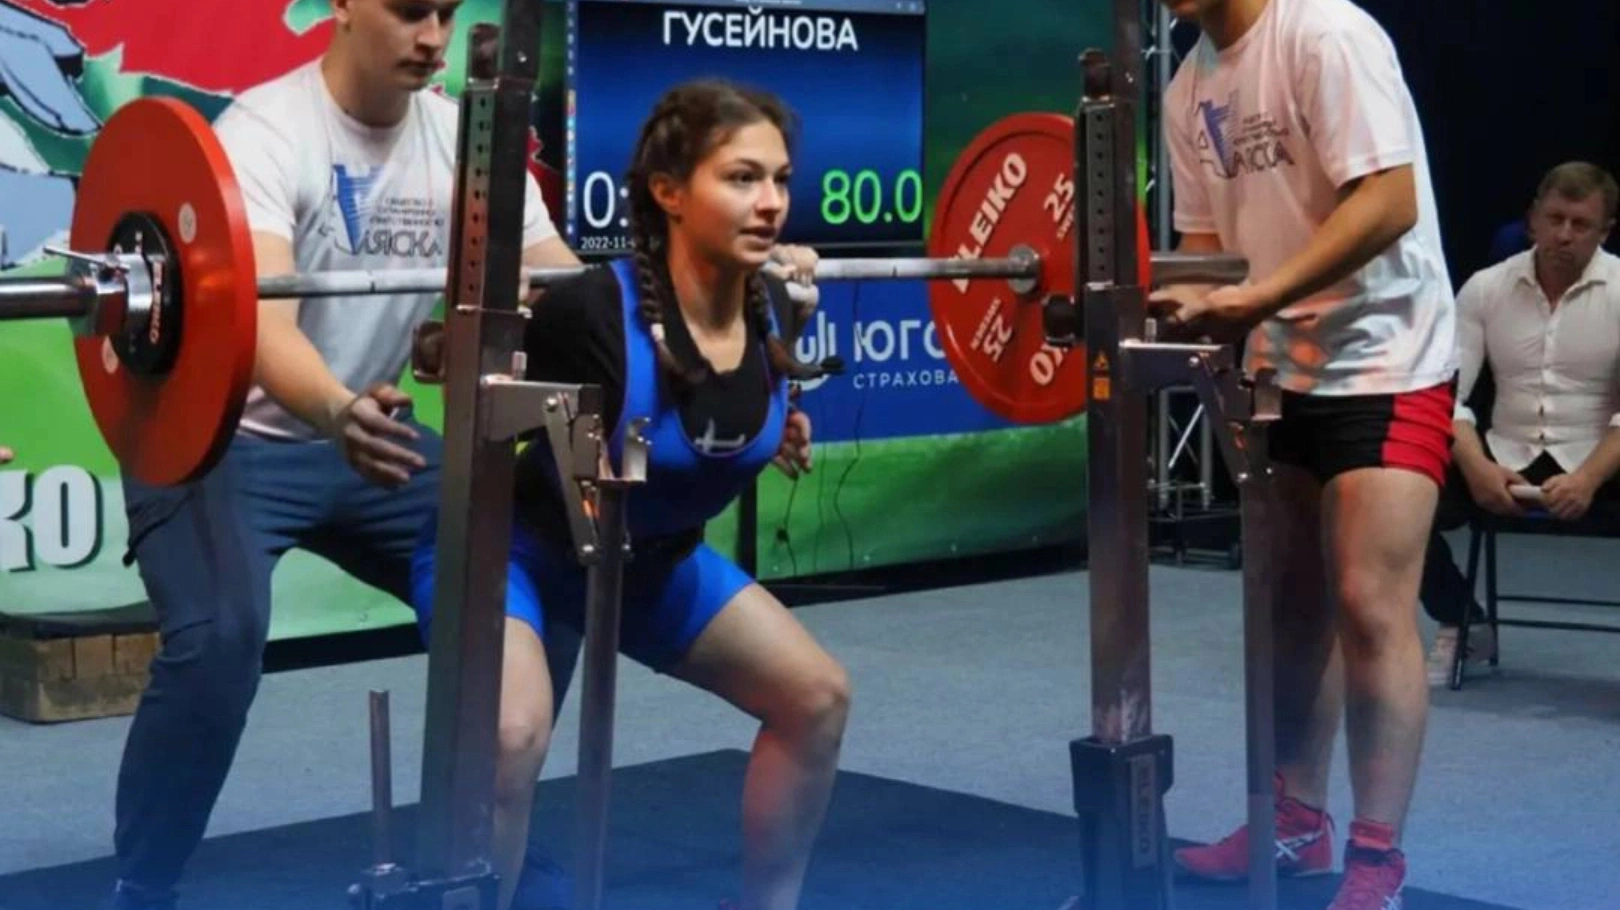 Пауэрлифтеры Салехарда взяли 11 медалей на Всероссийских соревнованиях